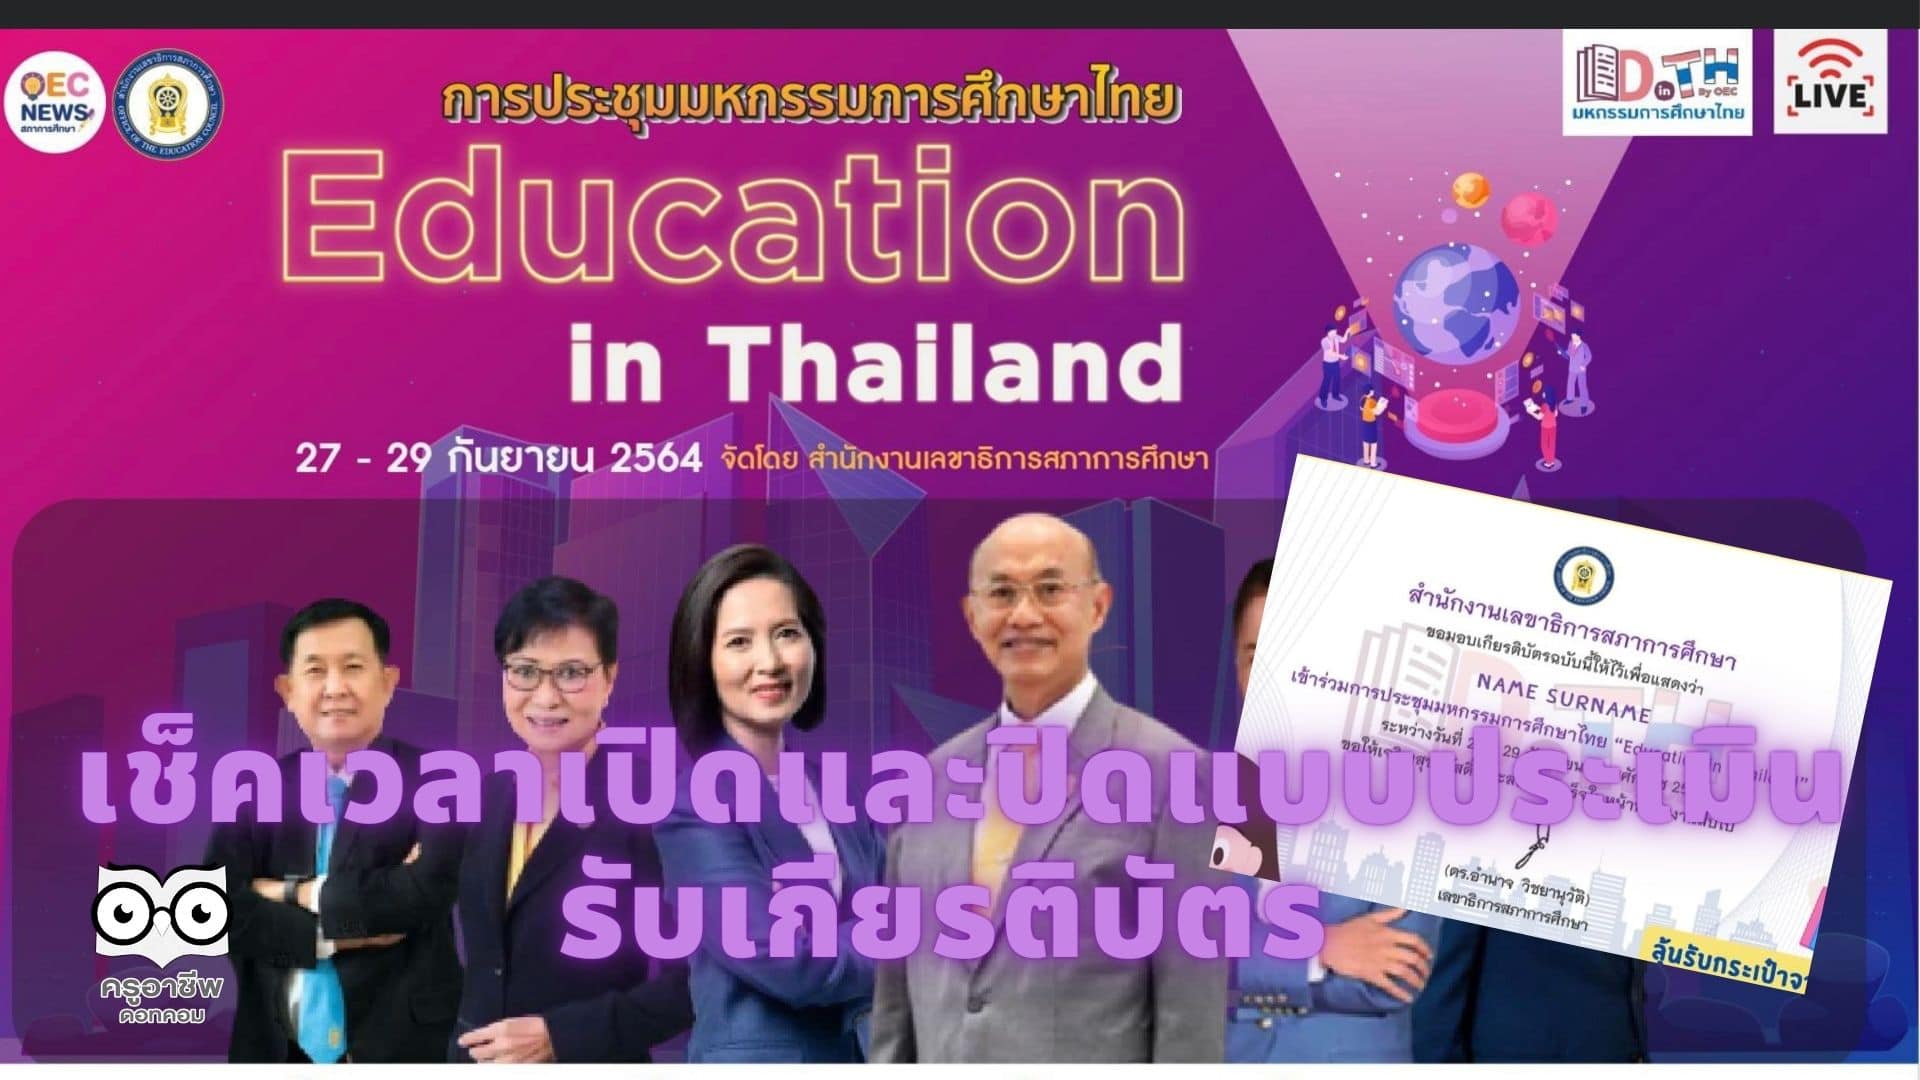 ห้ามพลาด!! เช็คเวลาเปิดและปิดแบบประเมิน รับเกียรติบัตร การประชุมมหกรรมการศึกษาไทย Education in Thailand ระหว่างวันที่ 27 - 29 กันยายน 2564